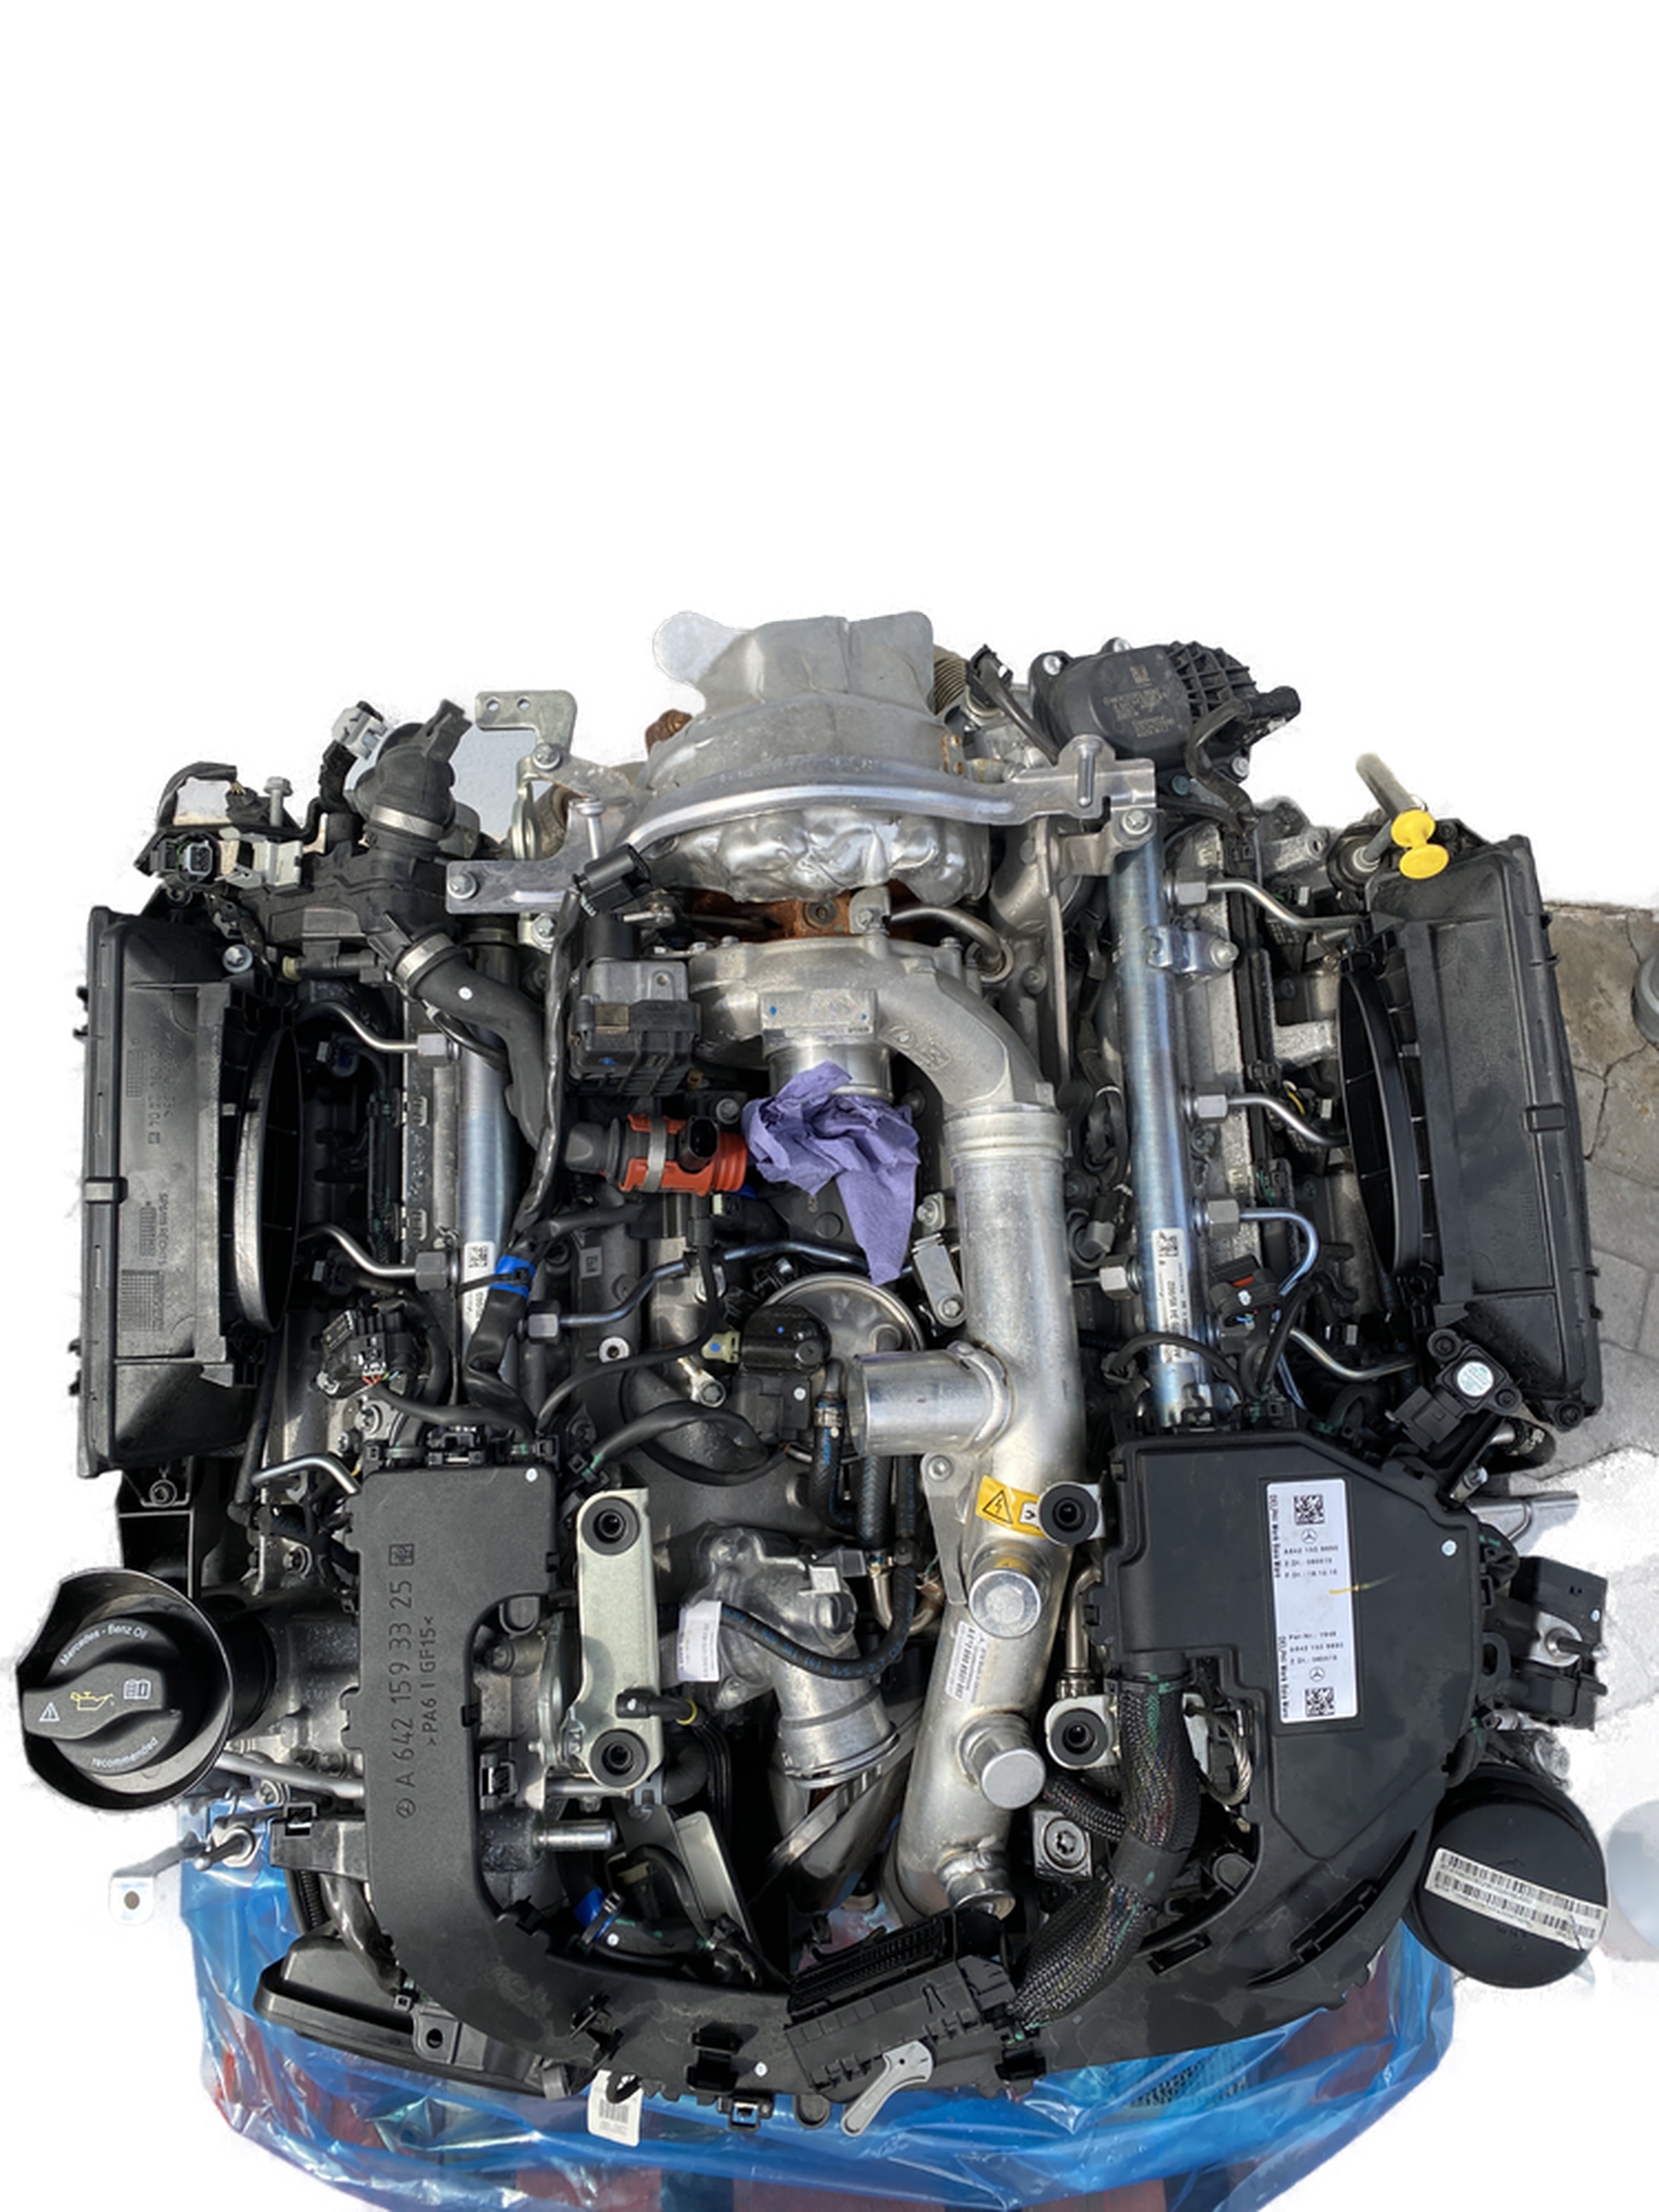 Ölfilter Mercedes Benz 300, 320, 350 CDI OM642 - Sofort lieferbar zum  Spitzenpreis – MIK Motoren GmbH